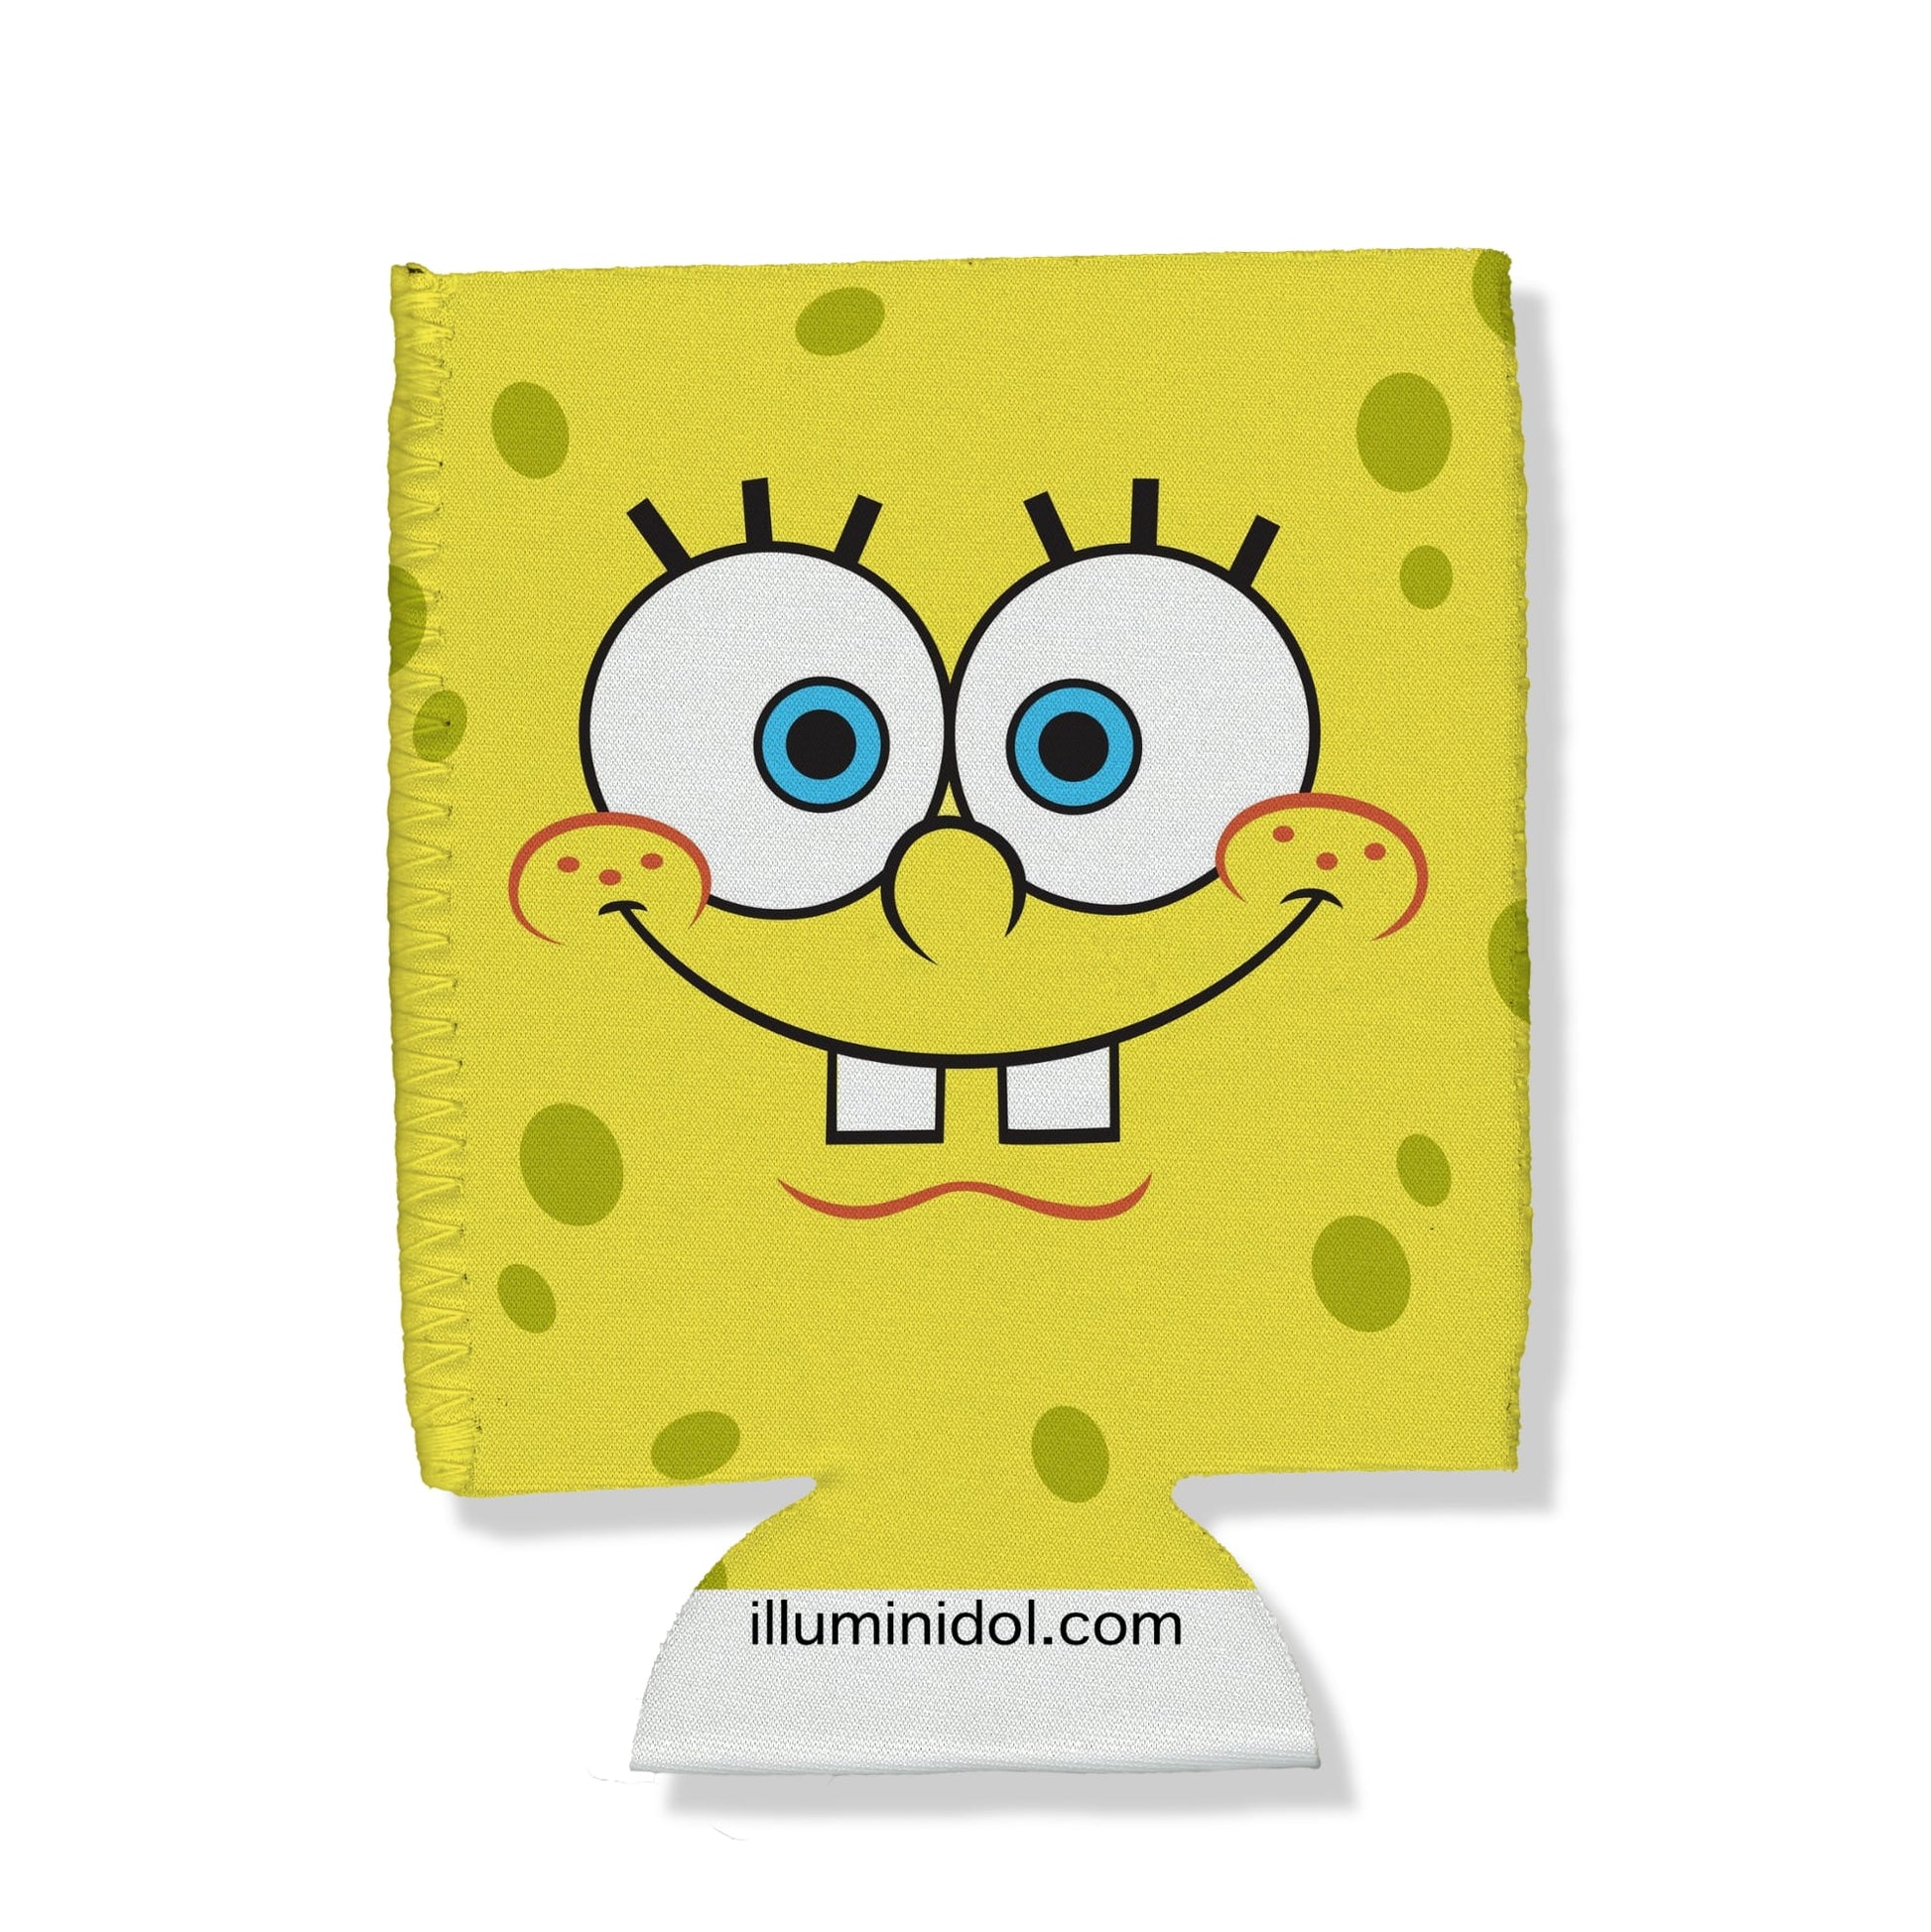 Spongebob (Spongebob) – Illuminidol